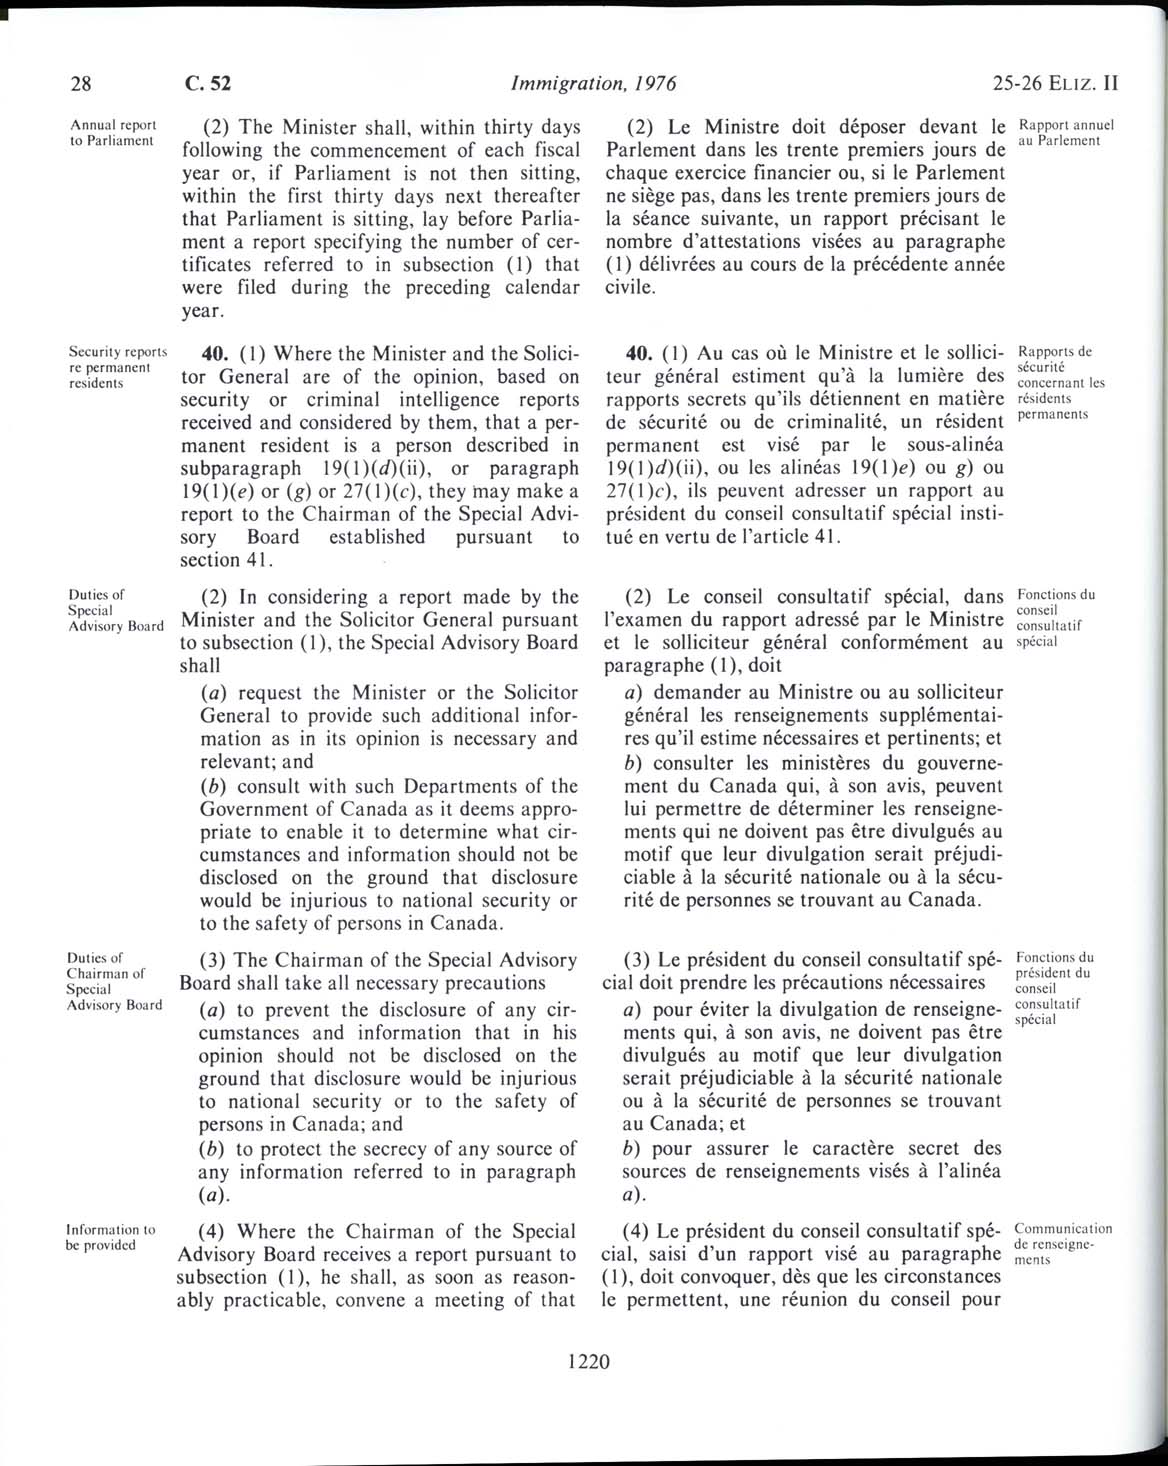 Page 1220 Loi sur l’immigration de 1976